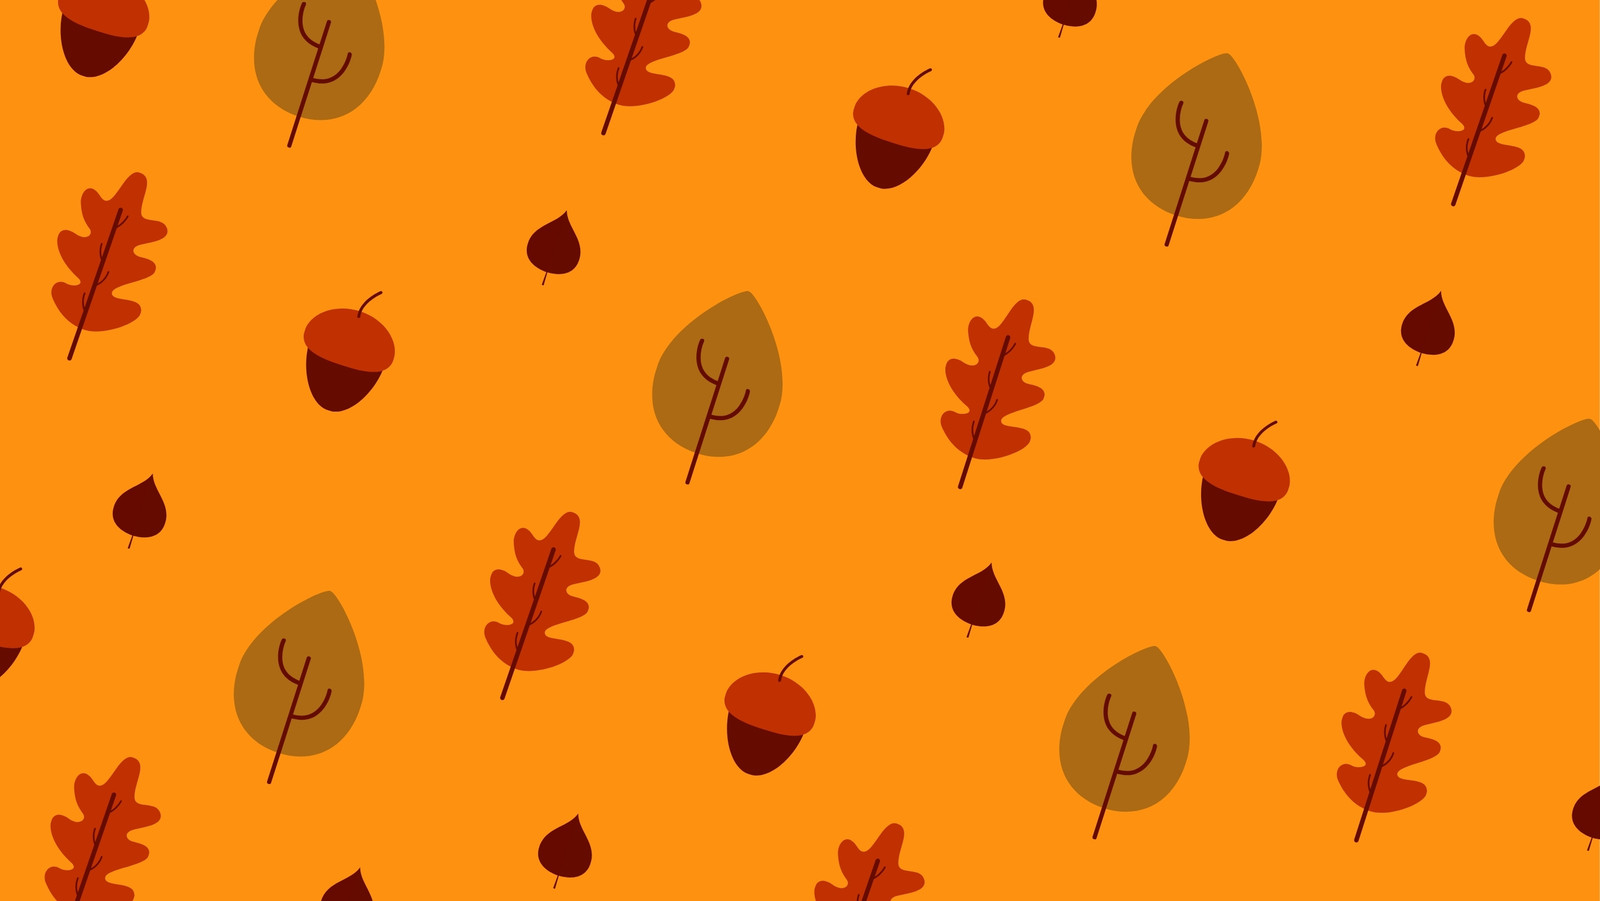 Plantillas de portadas de otoño para Facebook gratis | Canva